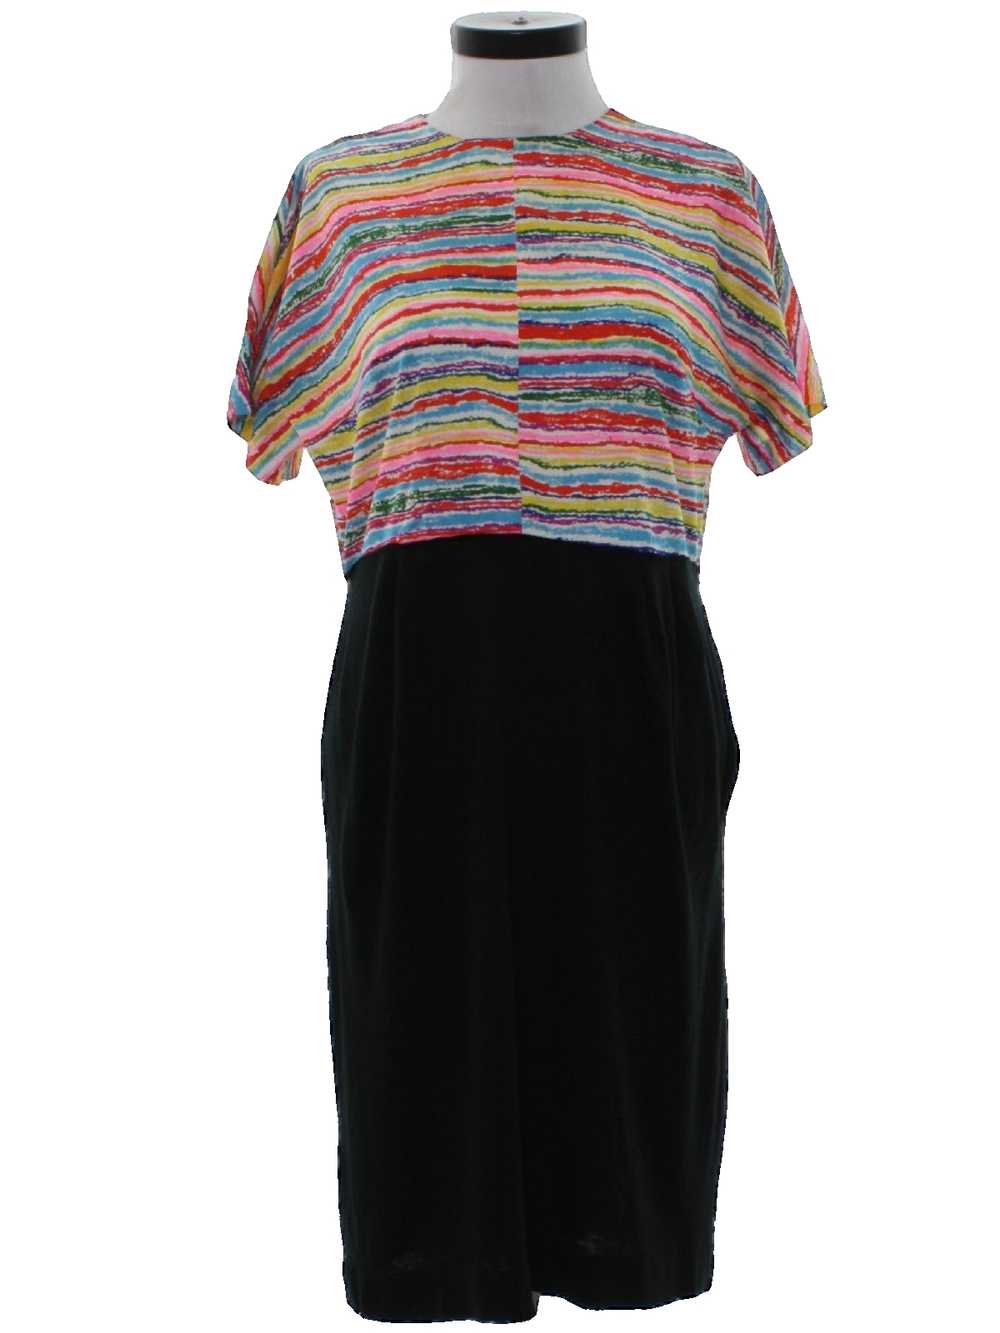 1960's Mod Knit Dress - image 1